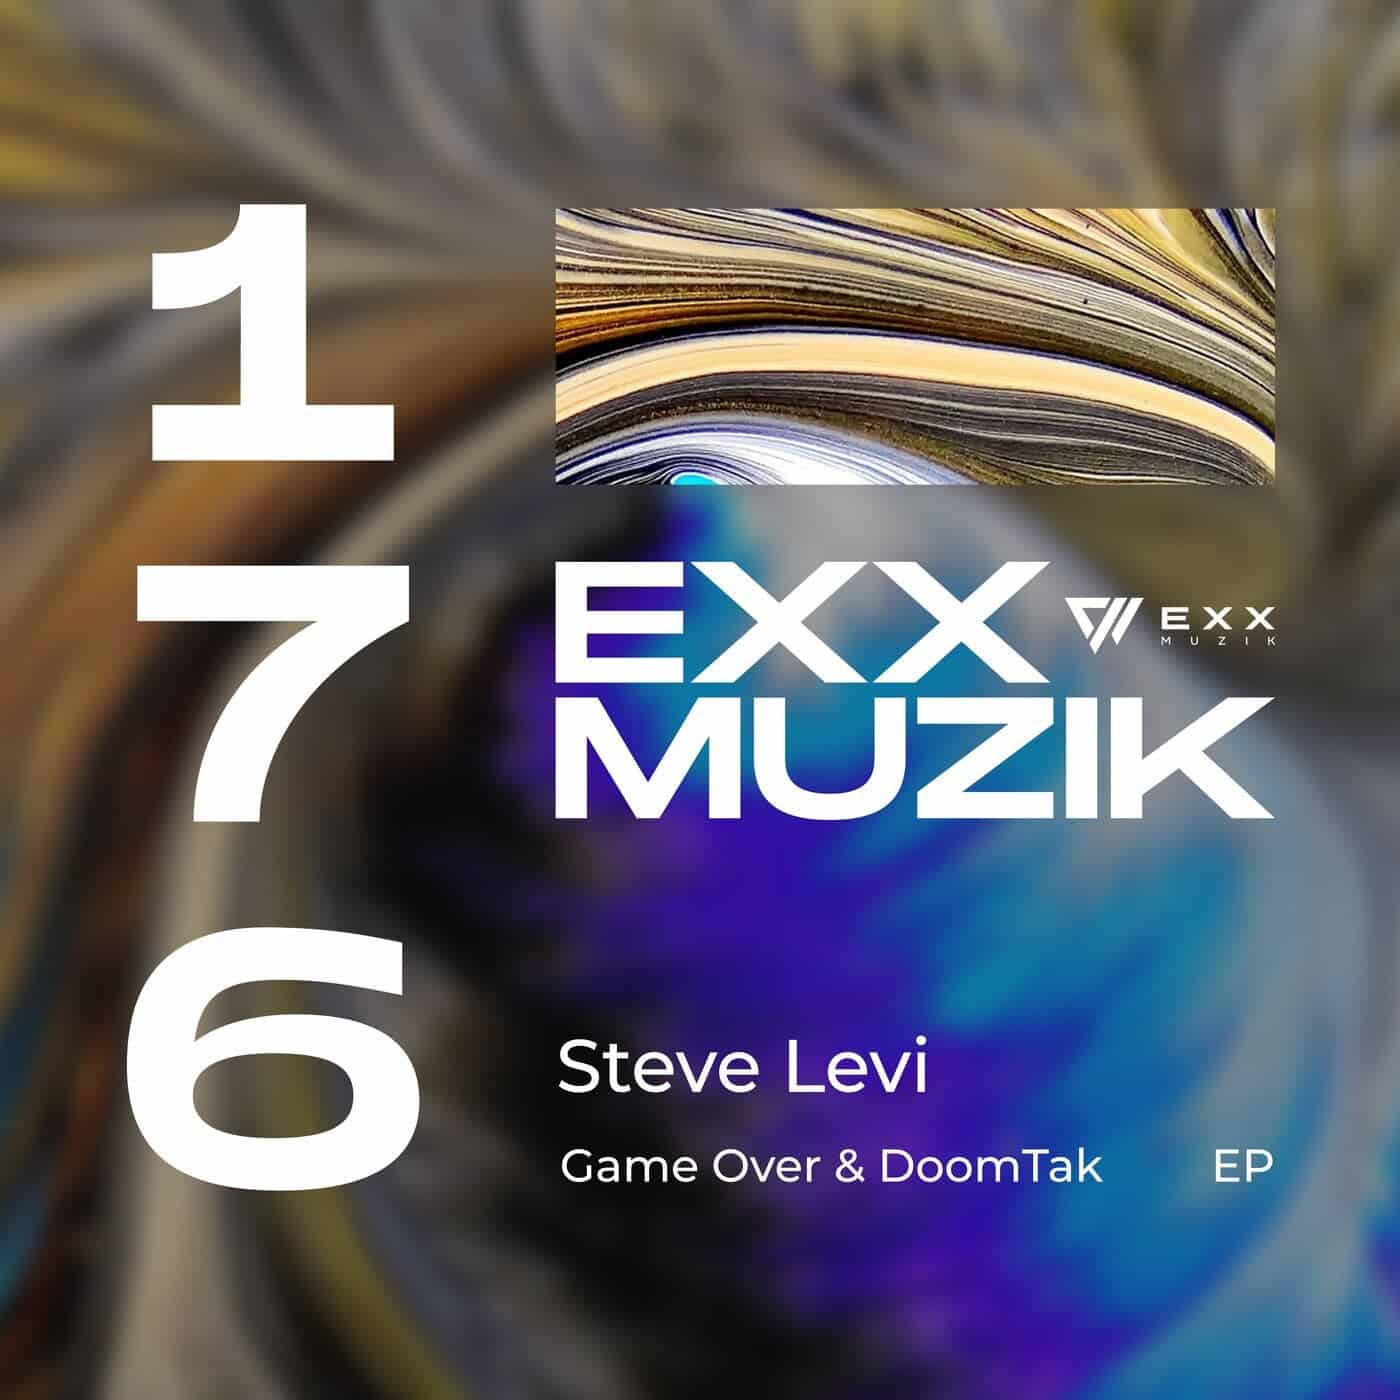 Download Steve Levi - Game Over & DoomTak on Electrobuzz